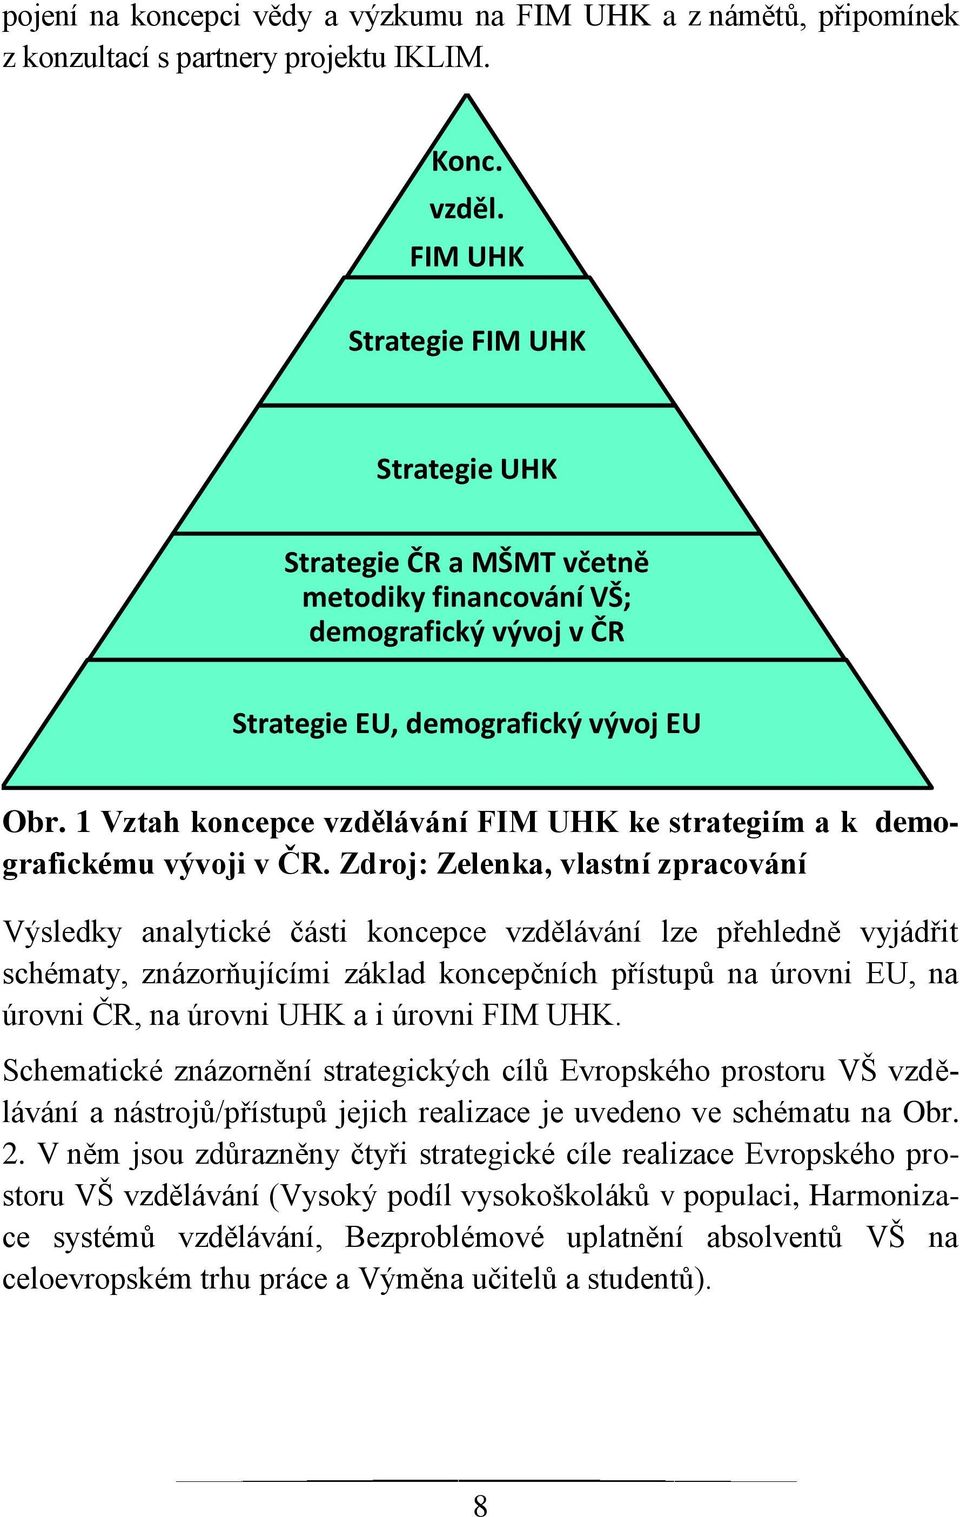 1 Vztah koncepce vzdělávání FIM UHK ke strategiím a k demografickému vývoji v ČR.